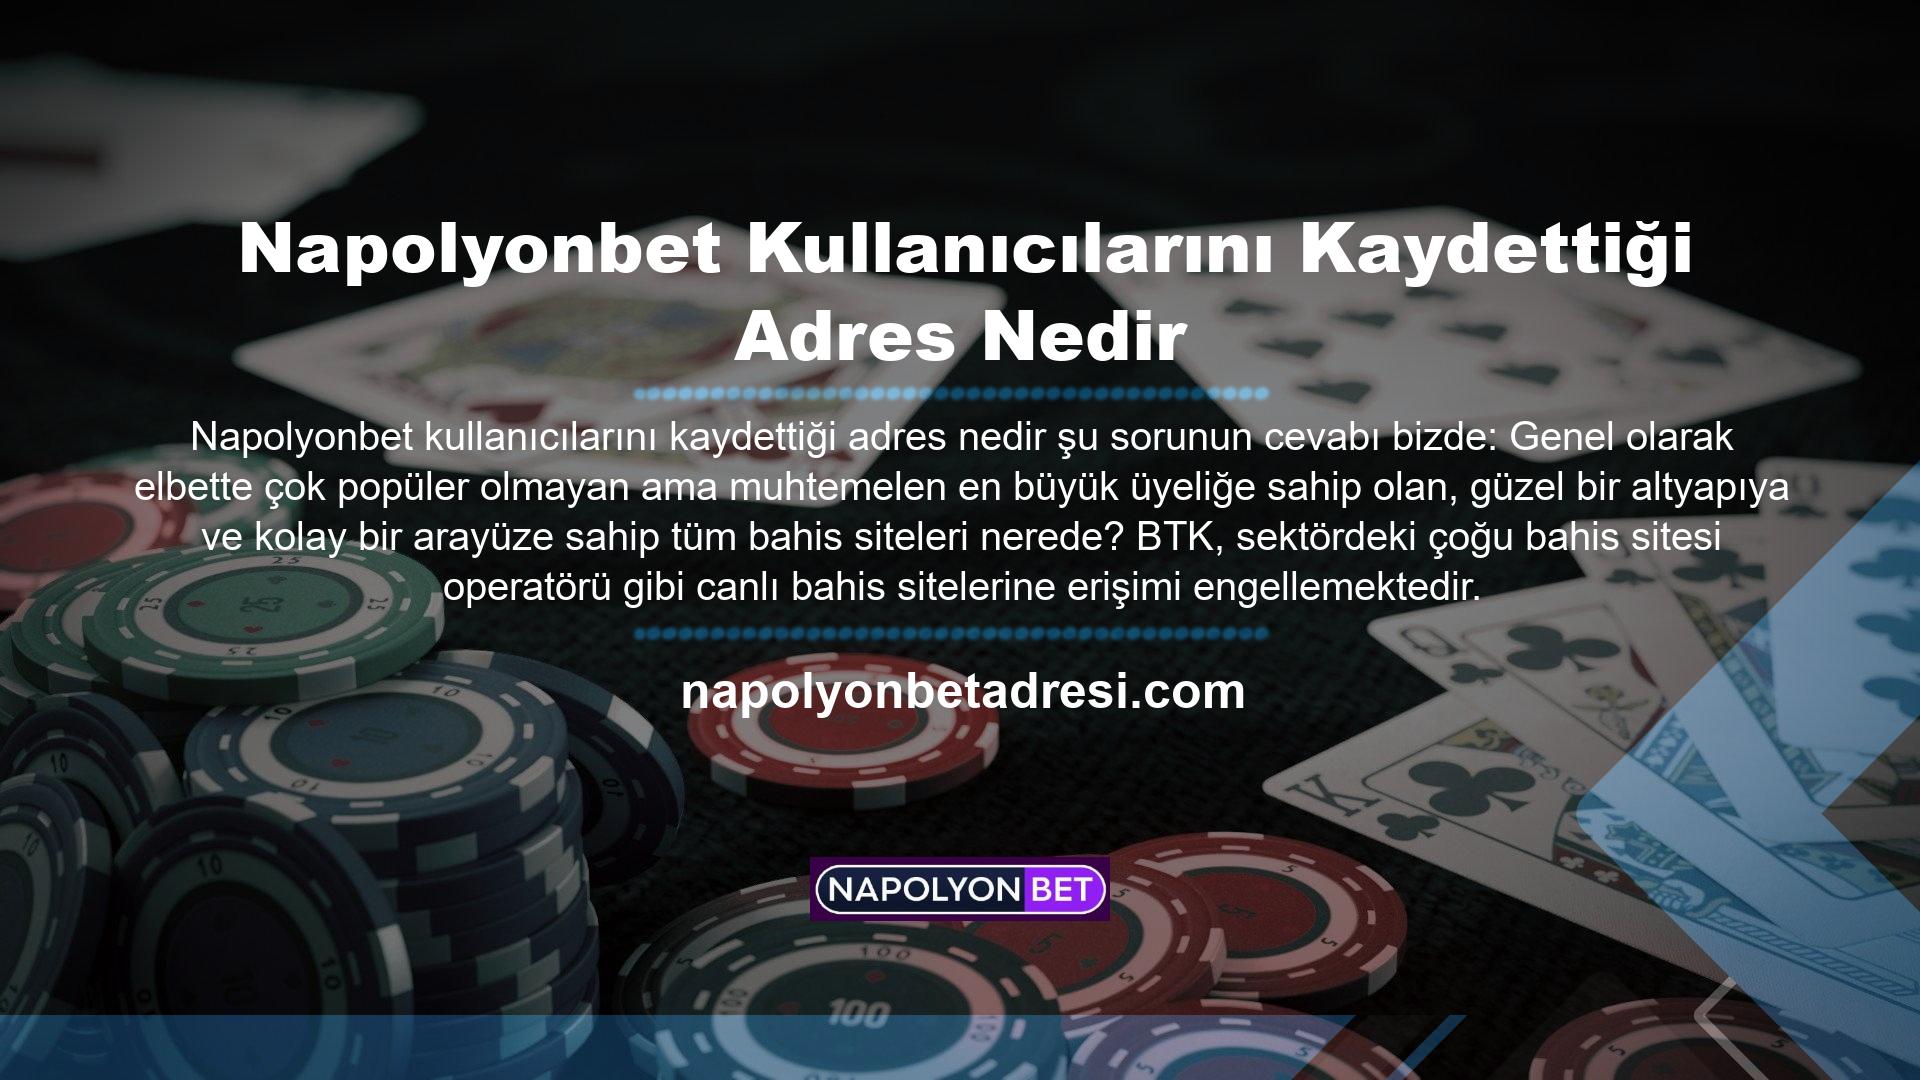 Napolyonbet web sitesinin kapatılmasının ardından yöneticiler, Türk casino pazarındaki kalıcı varlığını sürdürmek amacıyla yeni bir adres açacak